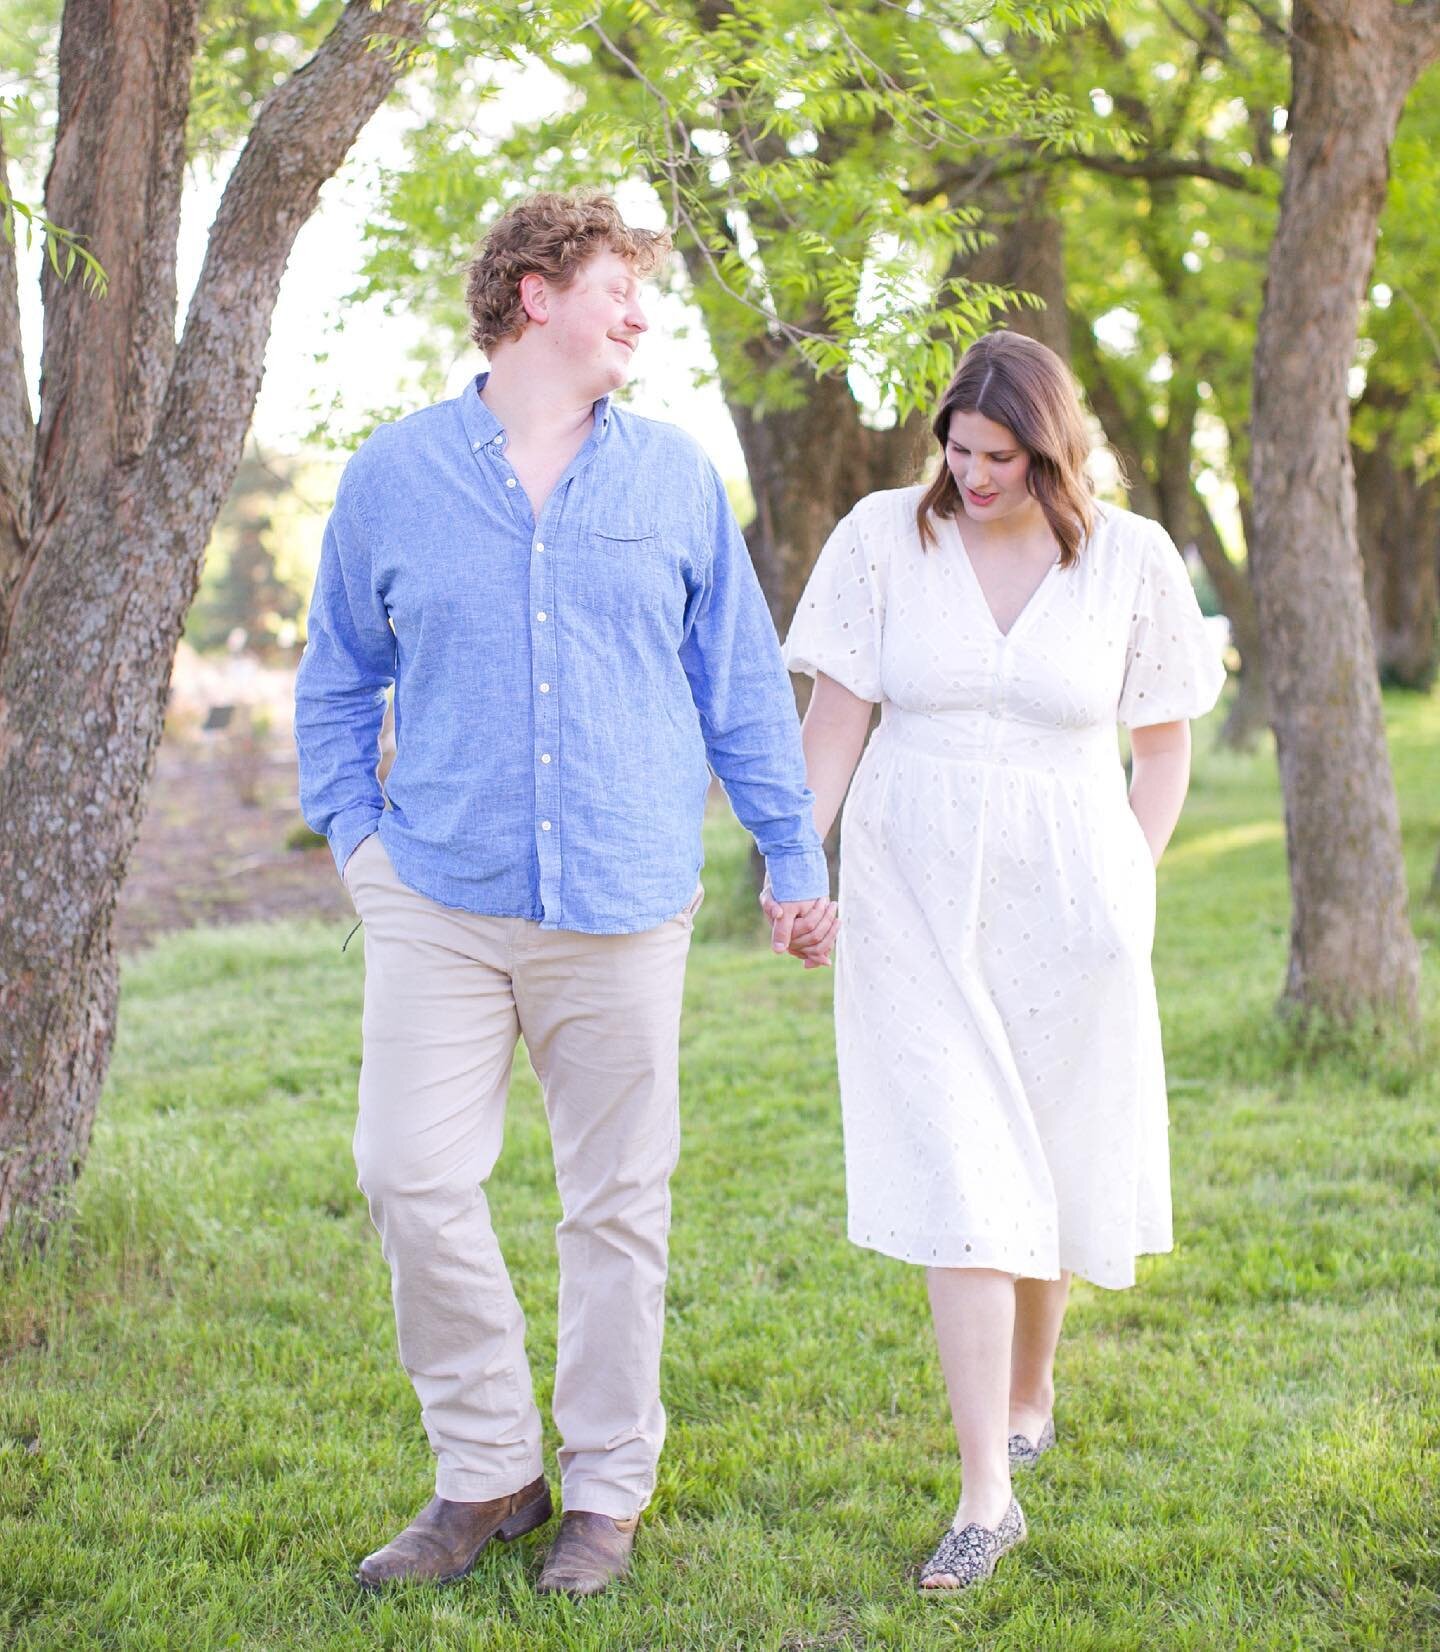 Hannah and Nathan walking into parenthood! #buckleup 🤍 #congratulations